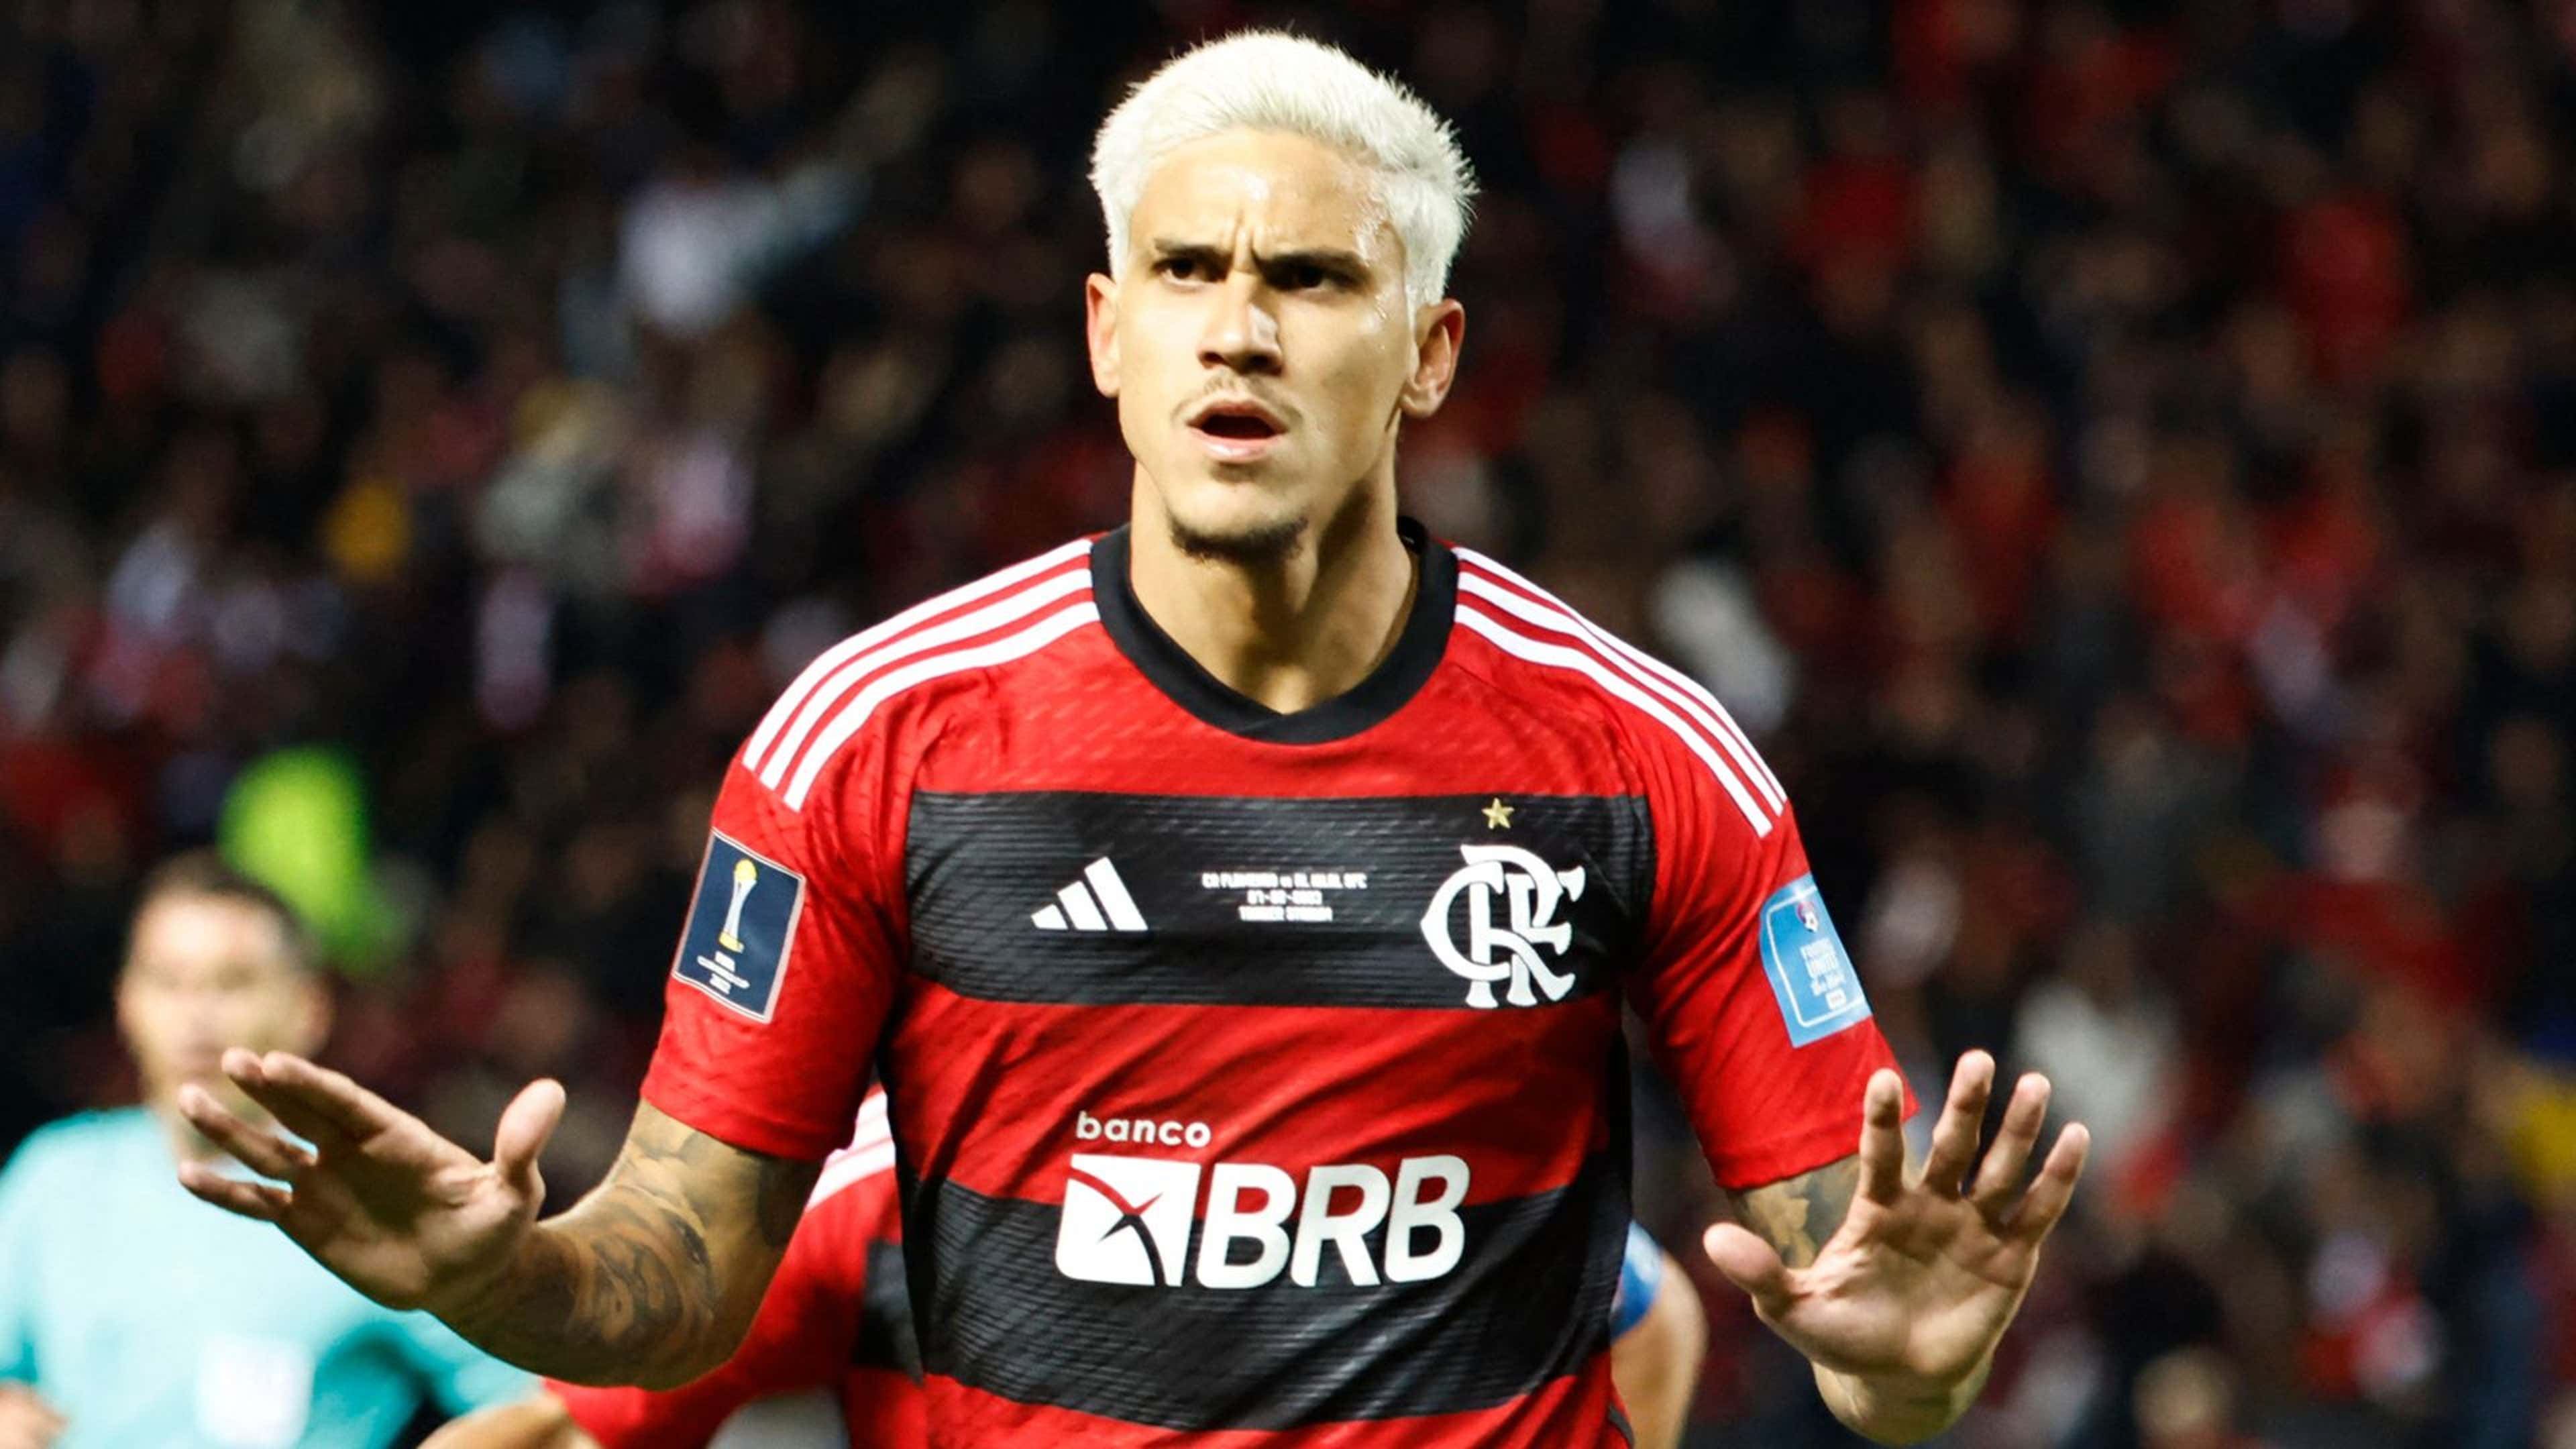 Al-Hilal, de novo: como foi a estreia do Flamengo no Mundial de